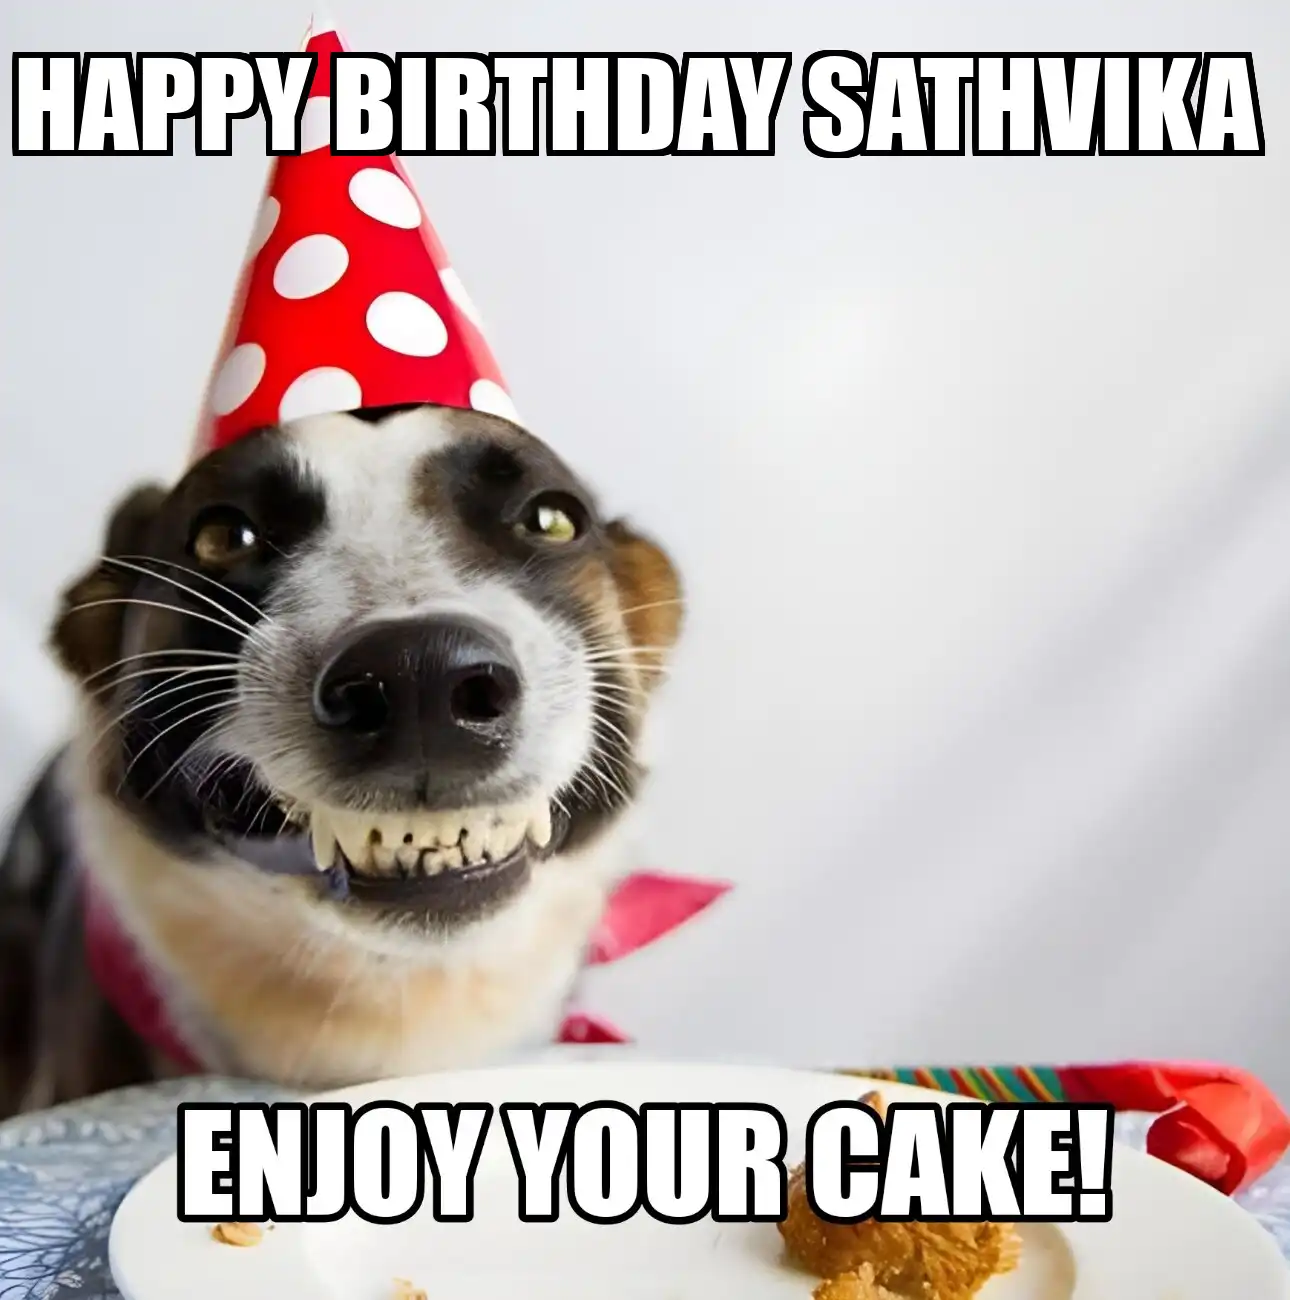 Happy Birthday Sathvika Enjoy Your Cake Dog Meme